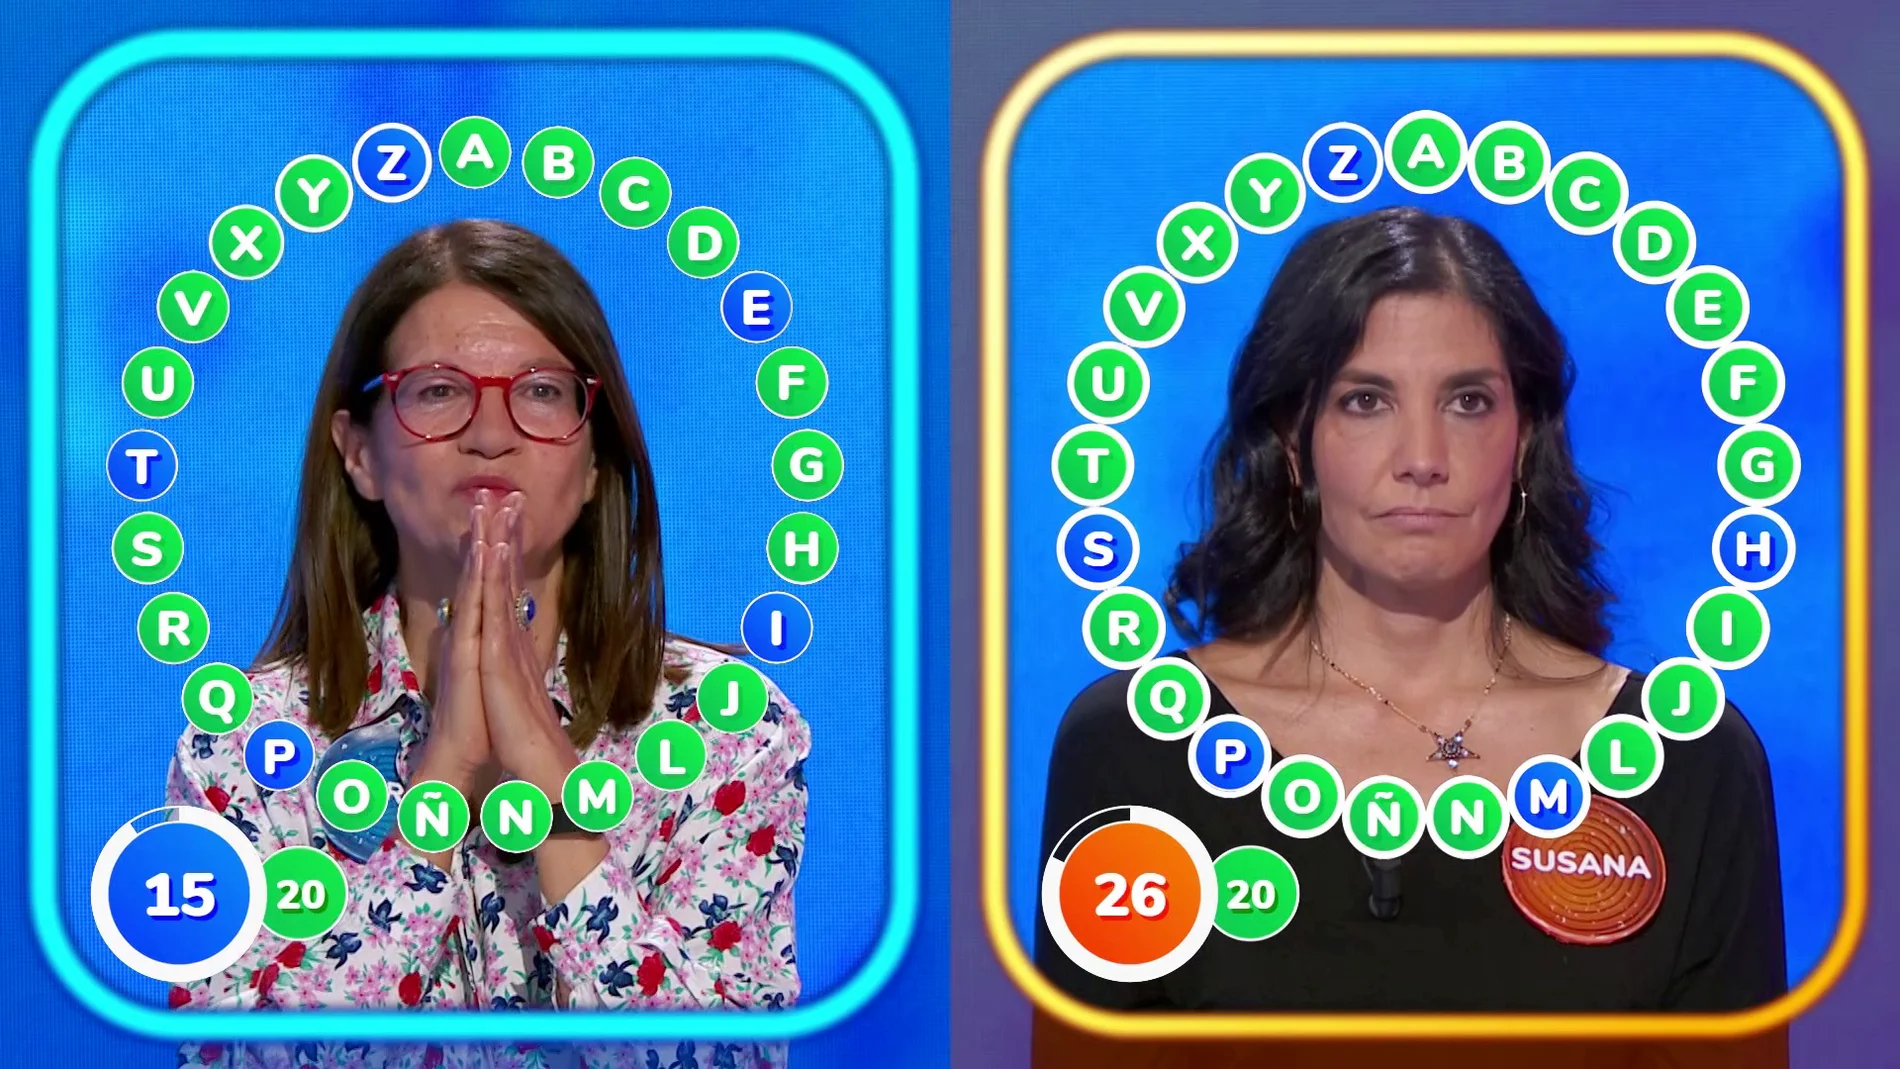 ¡Vaya lapsus! Un fallo inesperado y un final apoteósico deciden ‘El Rosco’ entre María y Susana: ¿Quién será finalista?